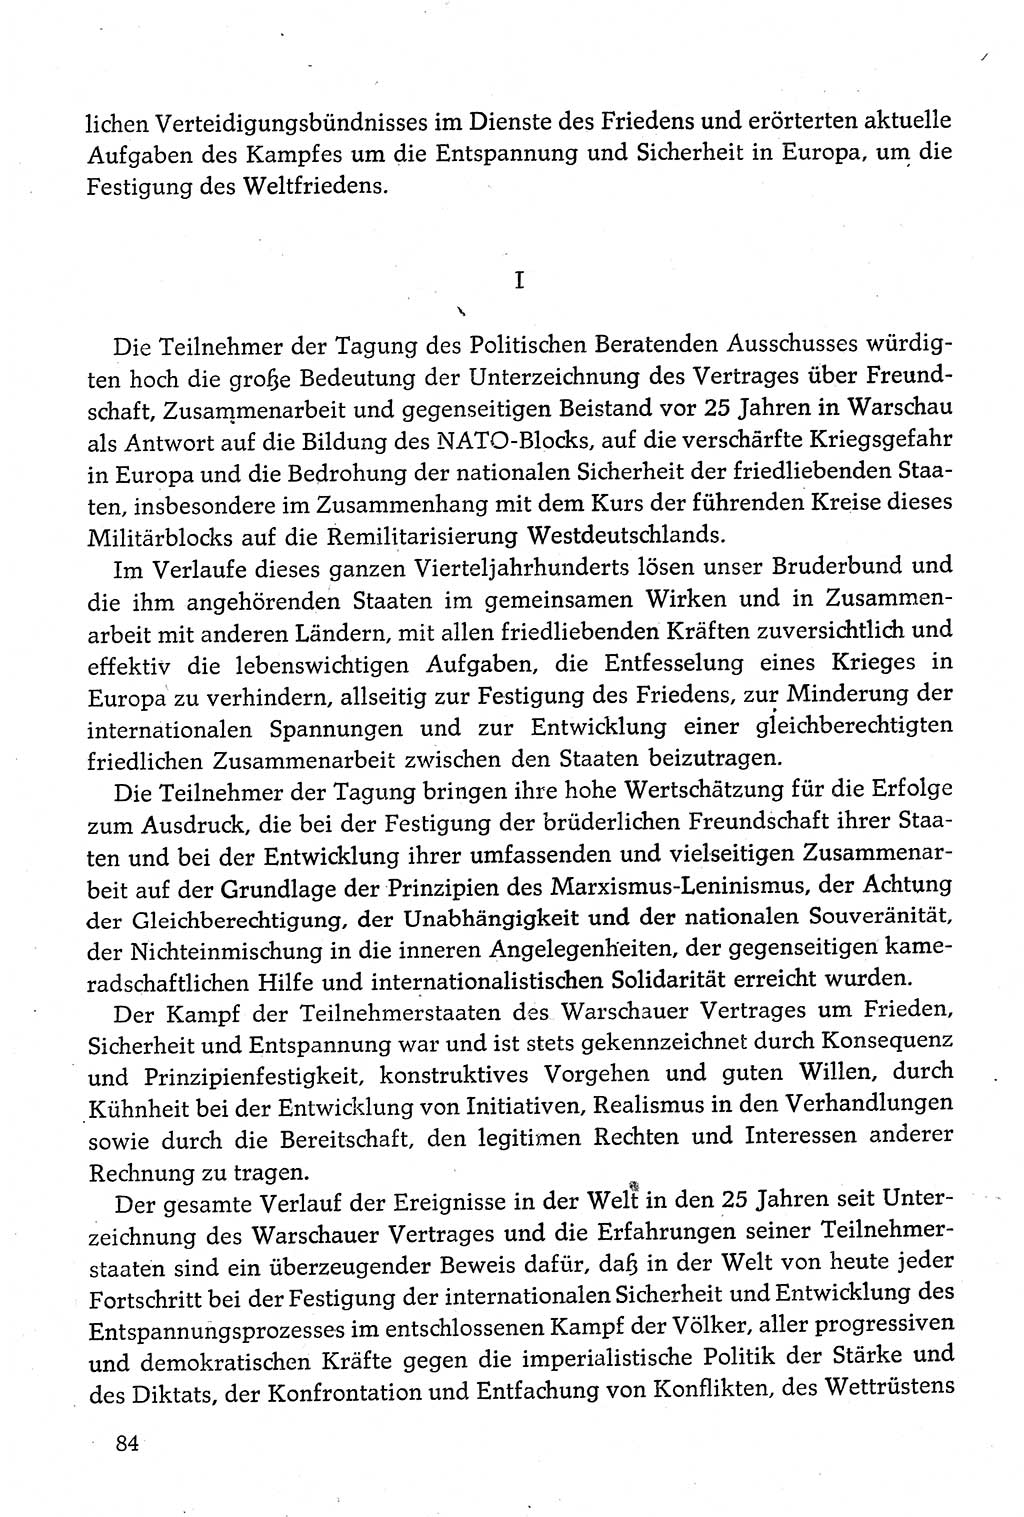 Dokumente der Sozialistischen Einheitspartei Deutschlands (SED) [Deutsche Demokratische Republik (DDR)] 1980-1981, Seite 84 (Dok. SED DDR 1980-1981, S. 84)